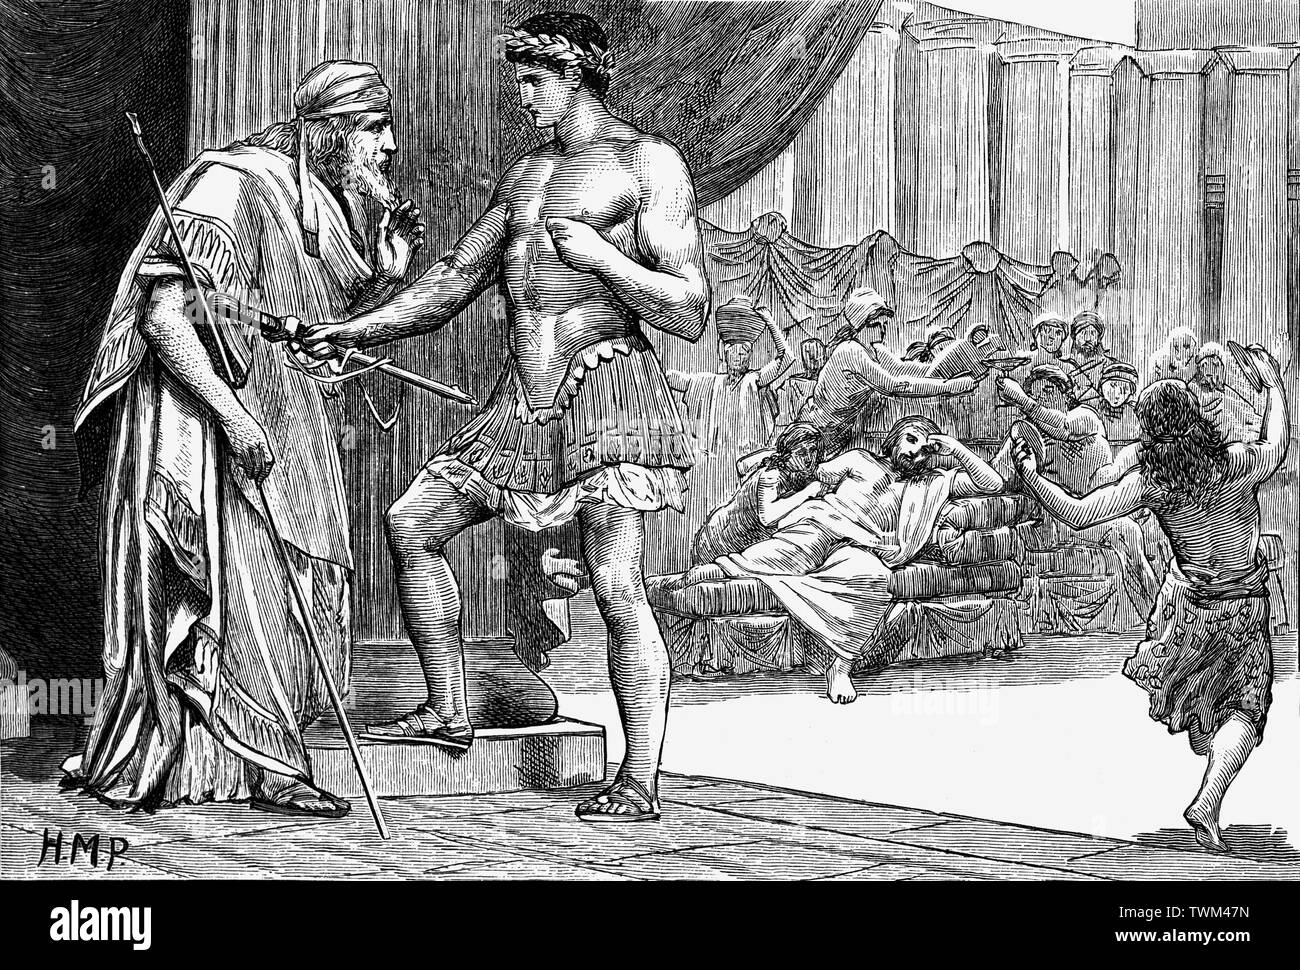 Dans la mythologie grecque, Aegeus était une figure archaïque dans le mythe fondateur d'Athènes, qui a donné son nom à la mer Égée et a engendré Thésée, le roi mythique et fondateur-héros d'Athènes. Theseus a été élevé sur l'île d'Sphairia. Lorsque Thésée a grandi et est devenu un courageux jeune homme, sa mère lui fait alors son père et il prit les épées retour à king Aegeus de revendiquer son droit d'aînesse. Banque D'Images